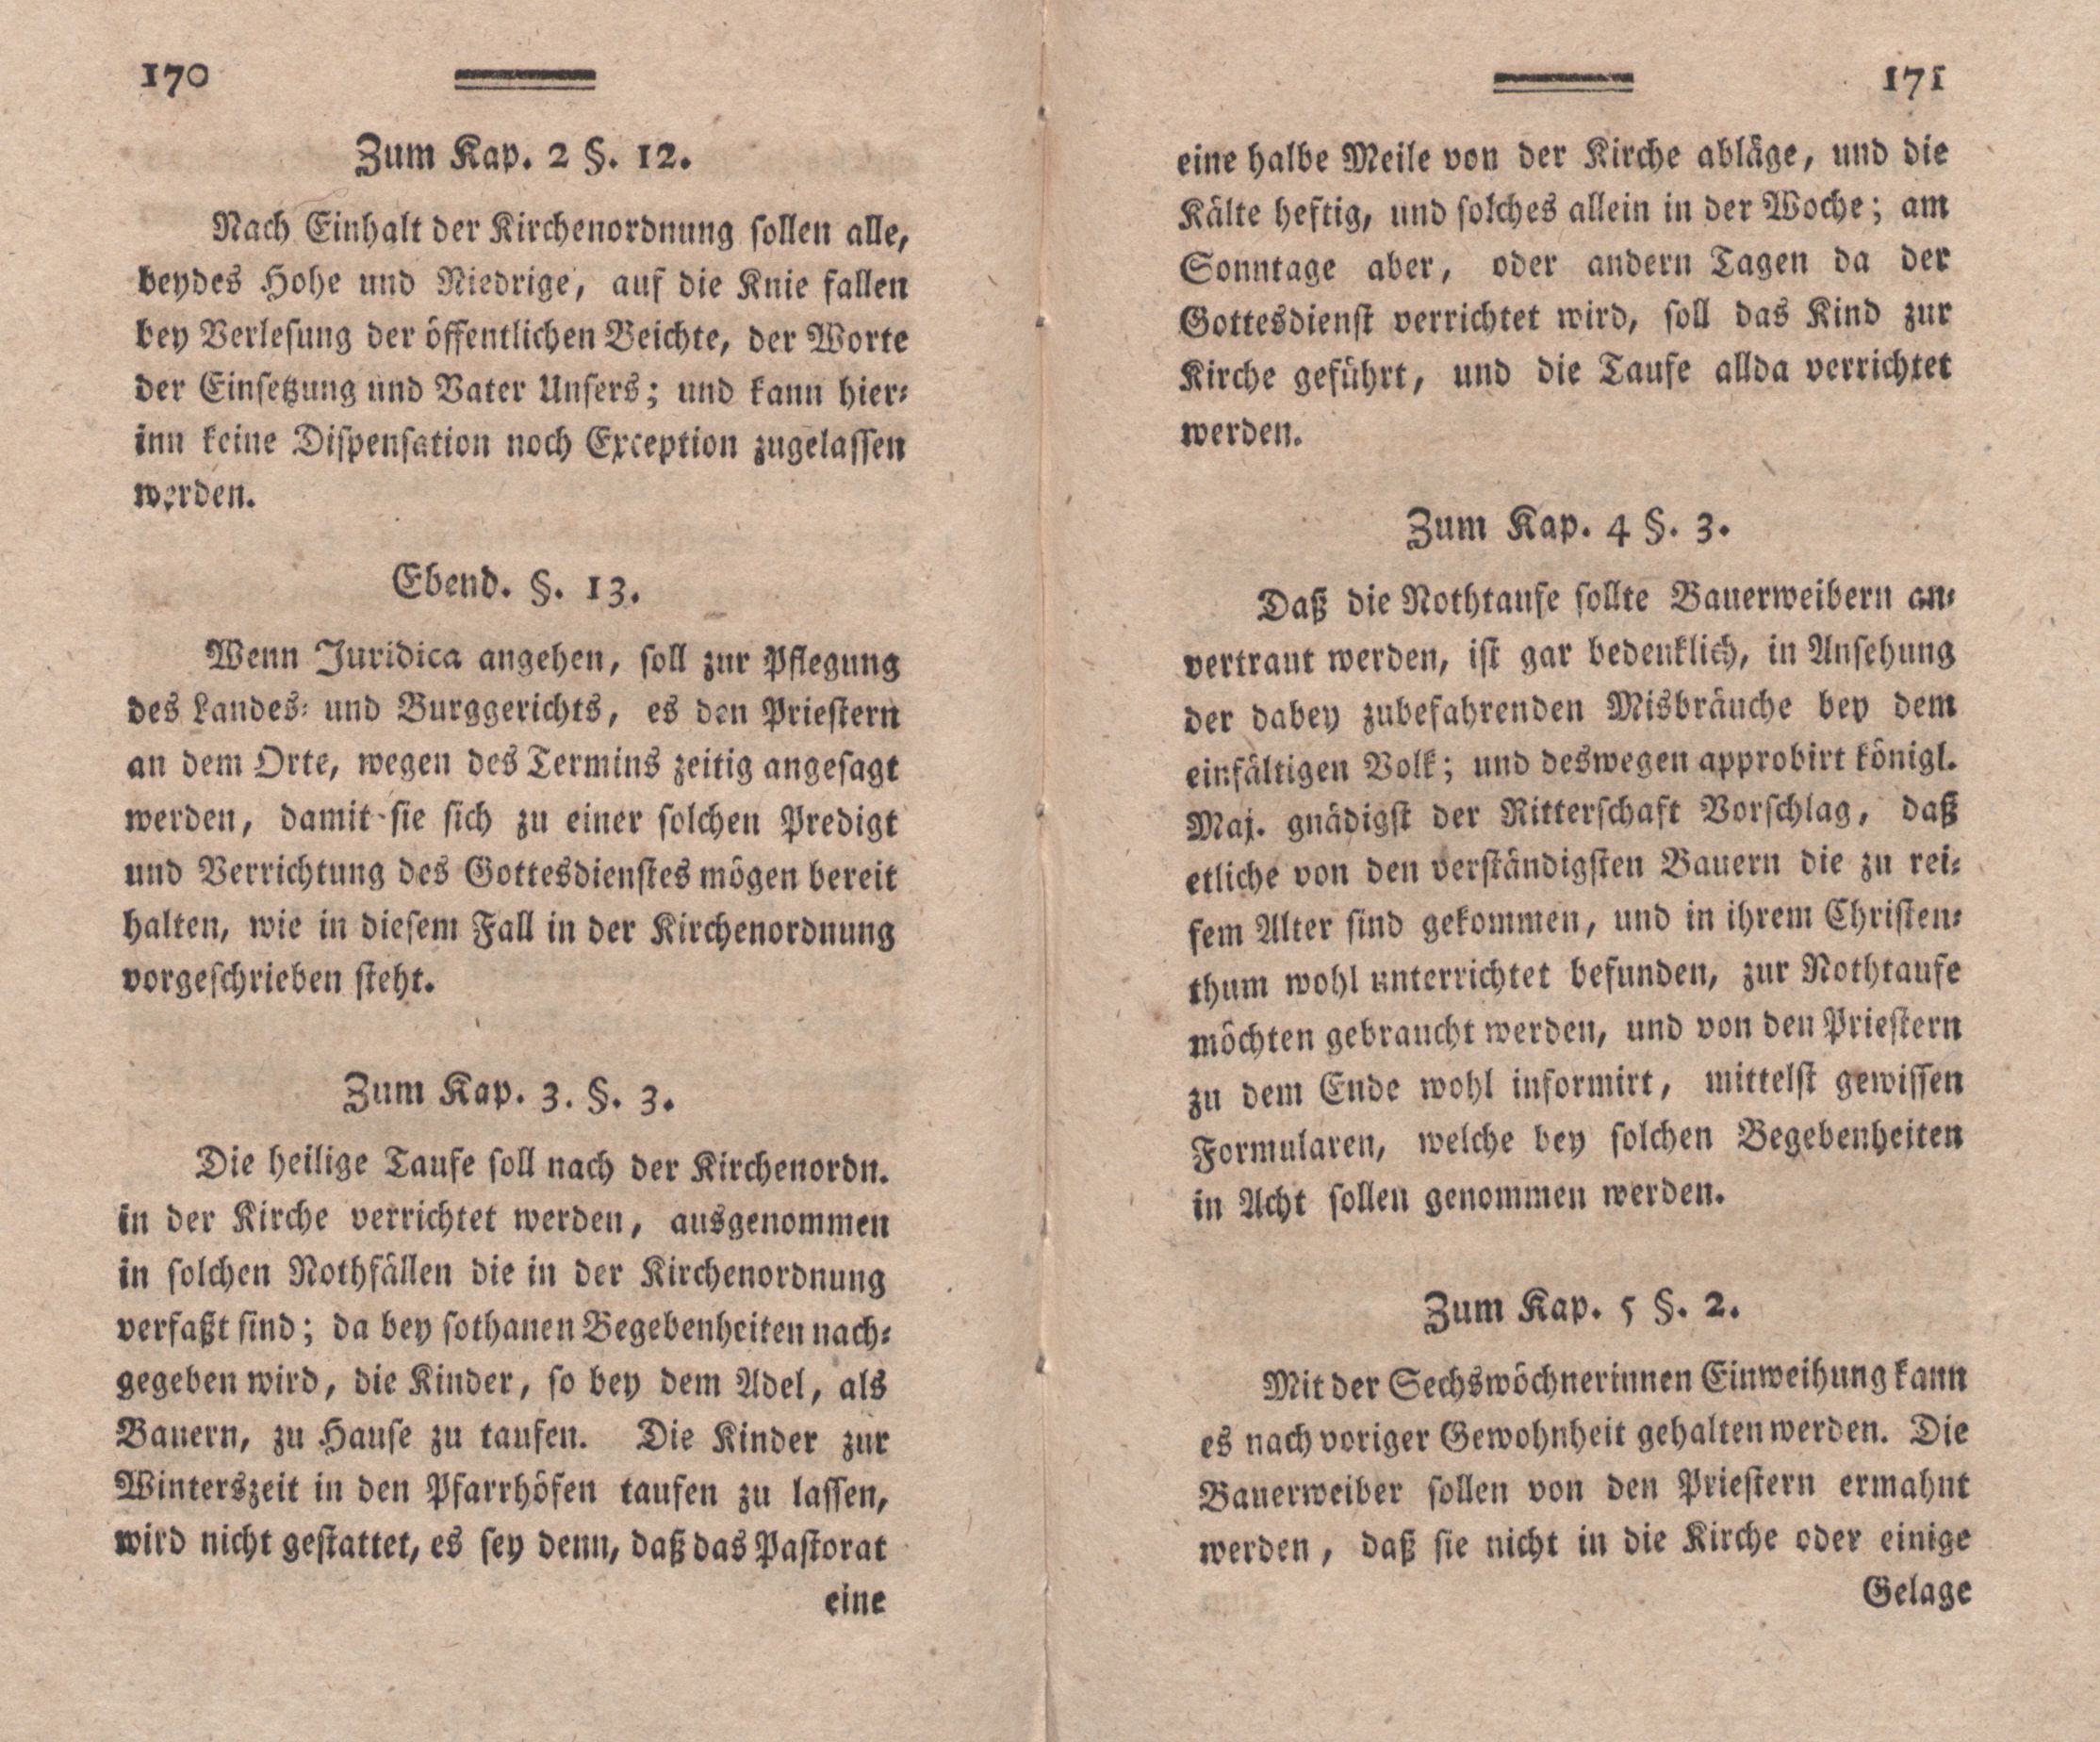 Nordische Miscellaneen [02] (1781) | 86. (170-171) Main body of text